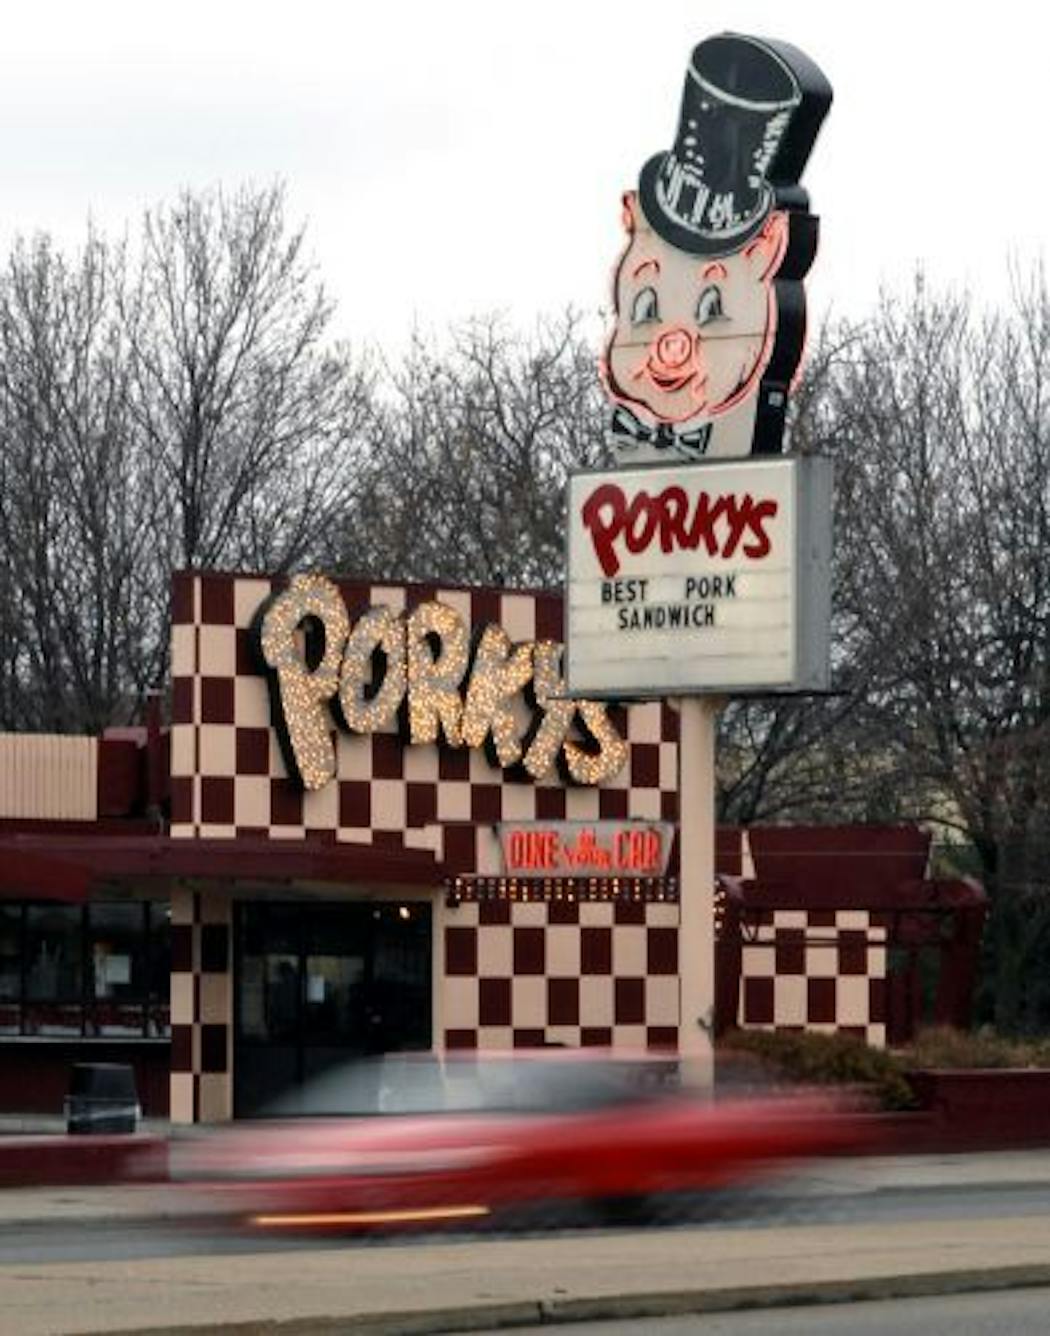 Porky's drive-in restaurant opened in St. Paul in 1953.